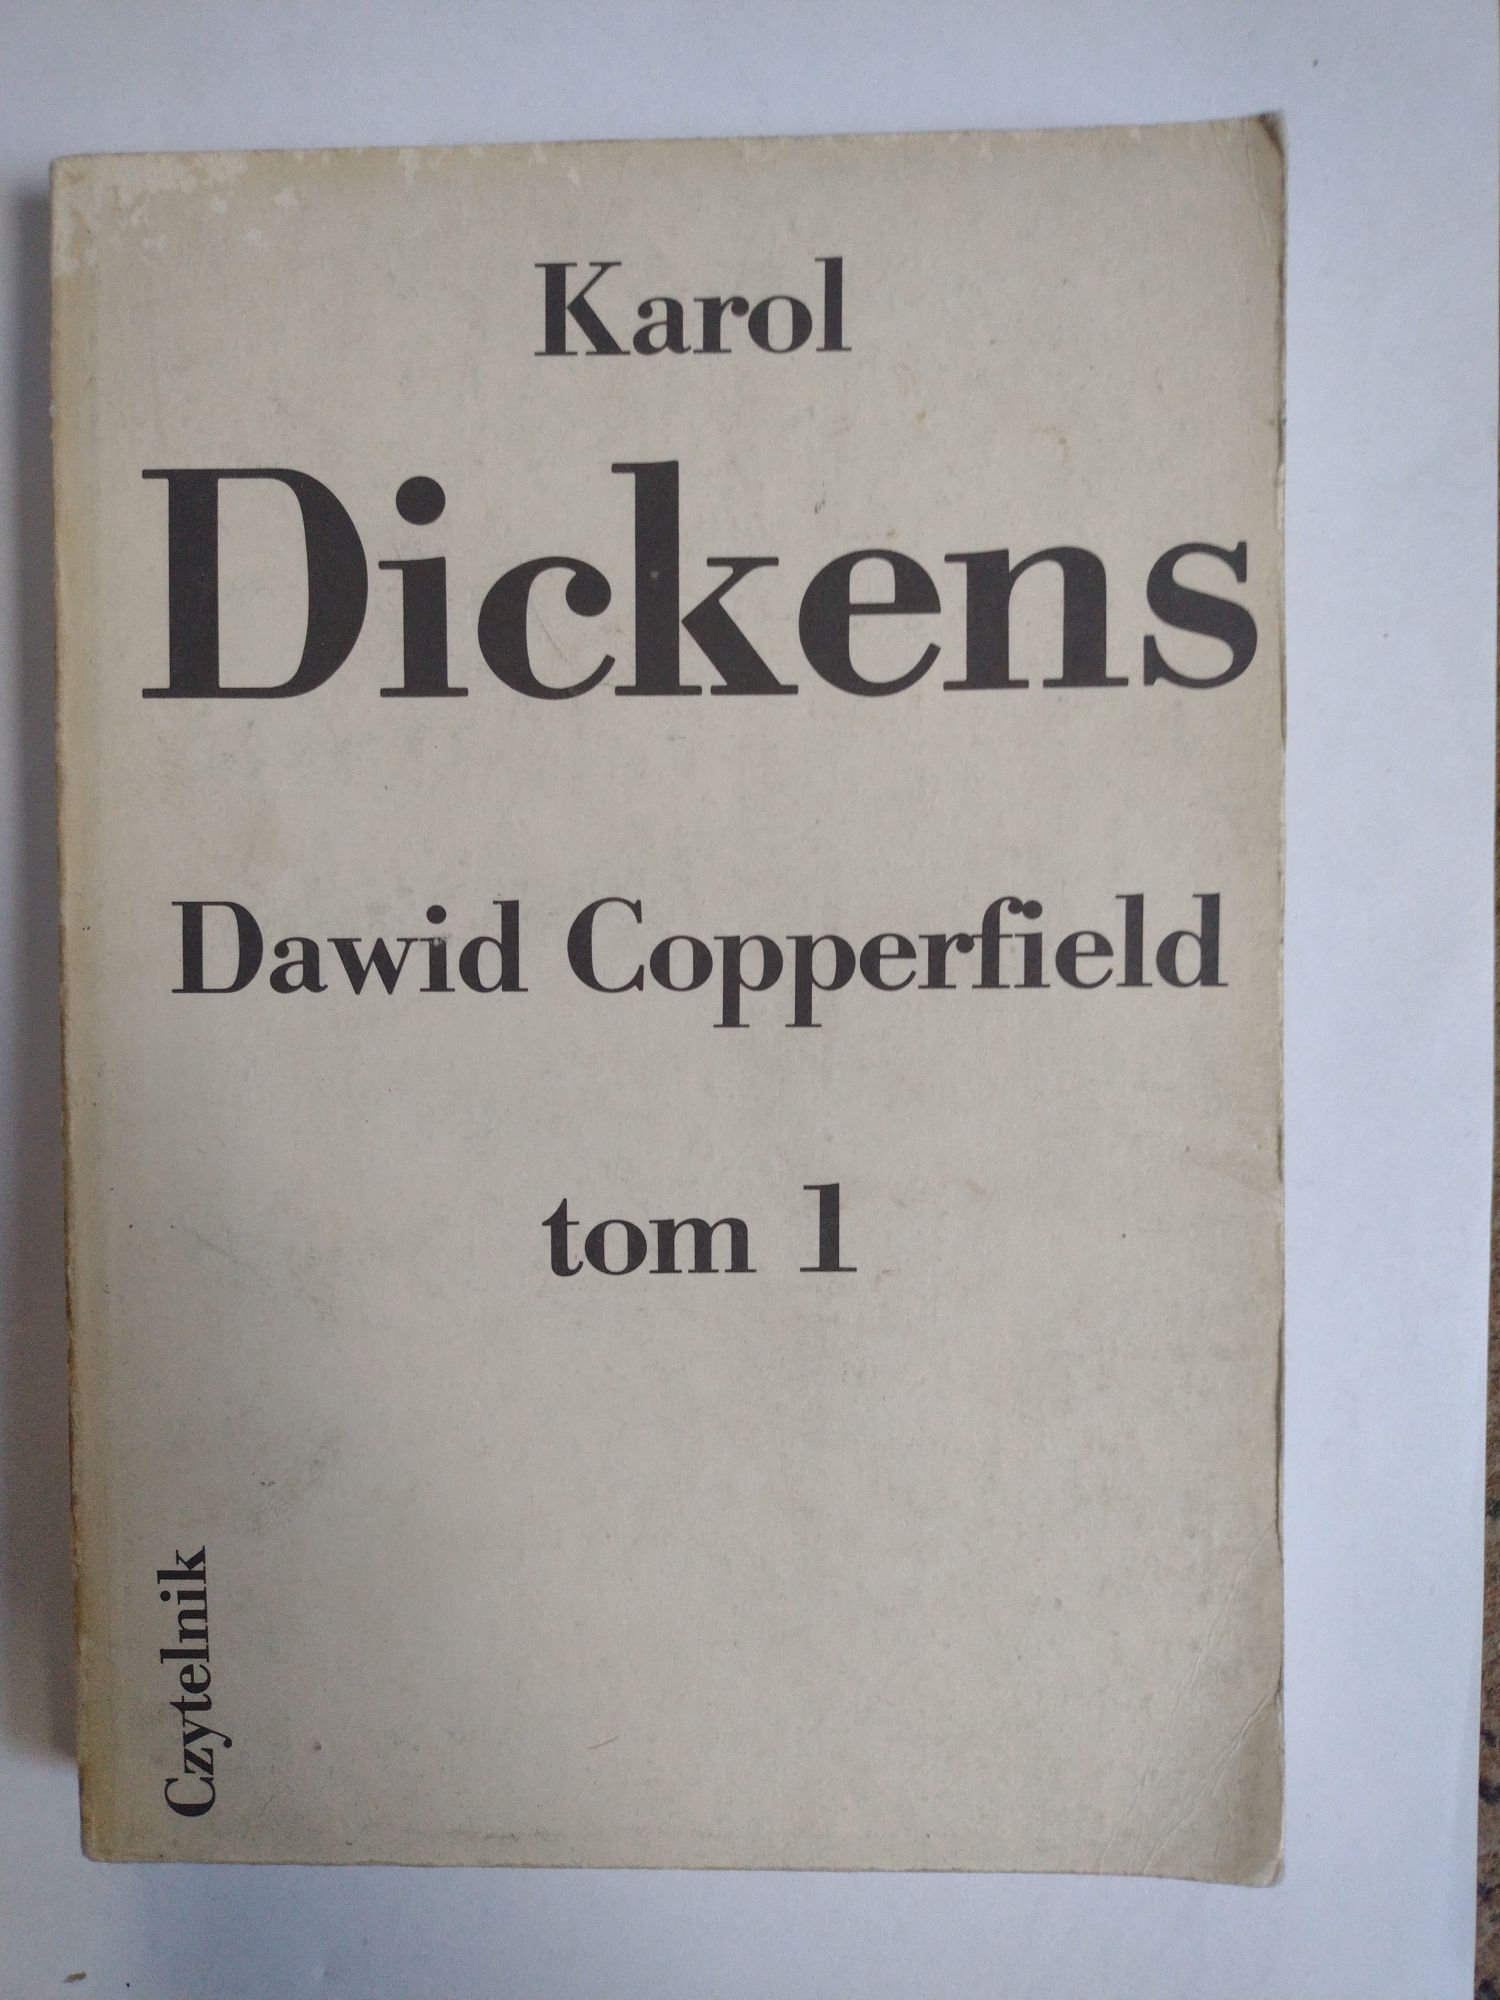 Karol Dickens Dawid Copperfield tom 1